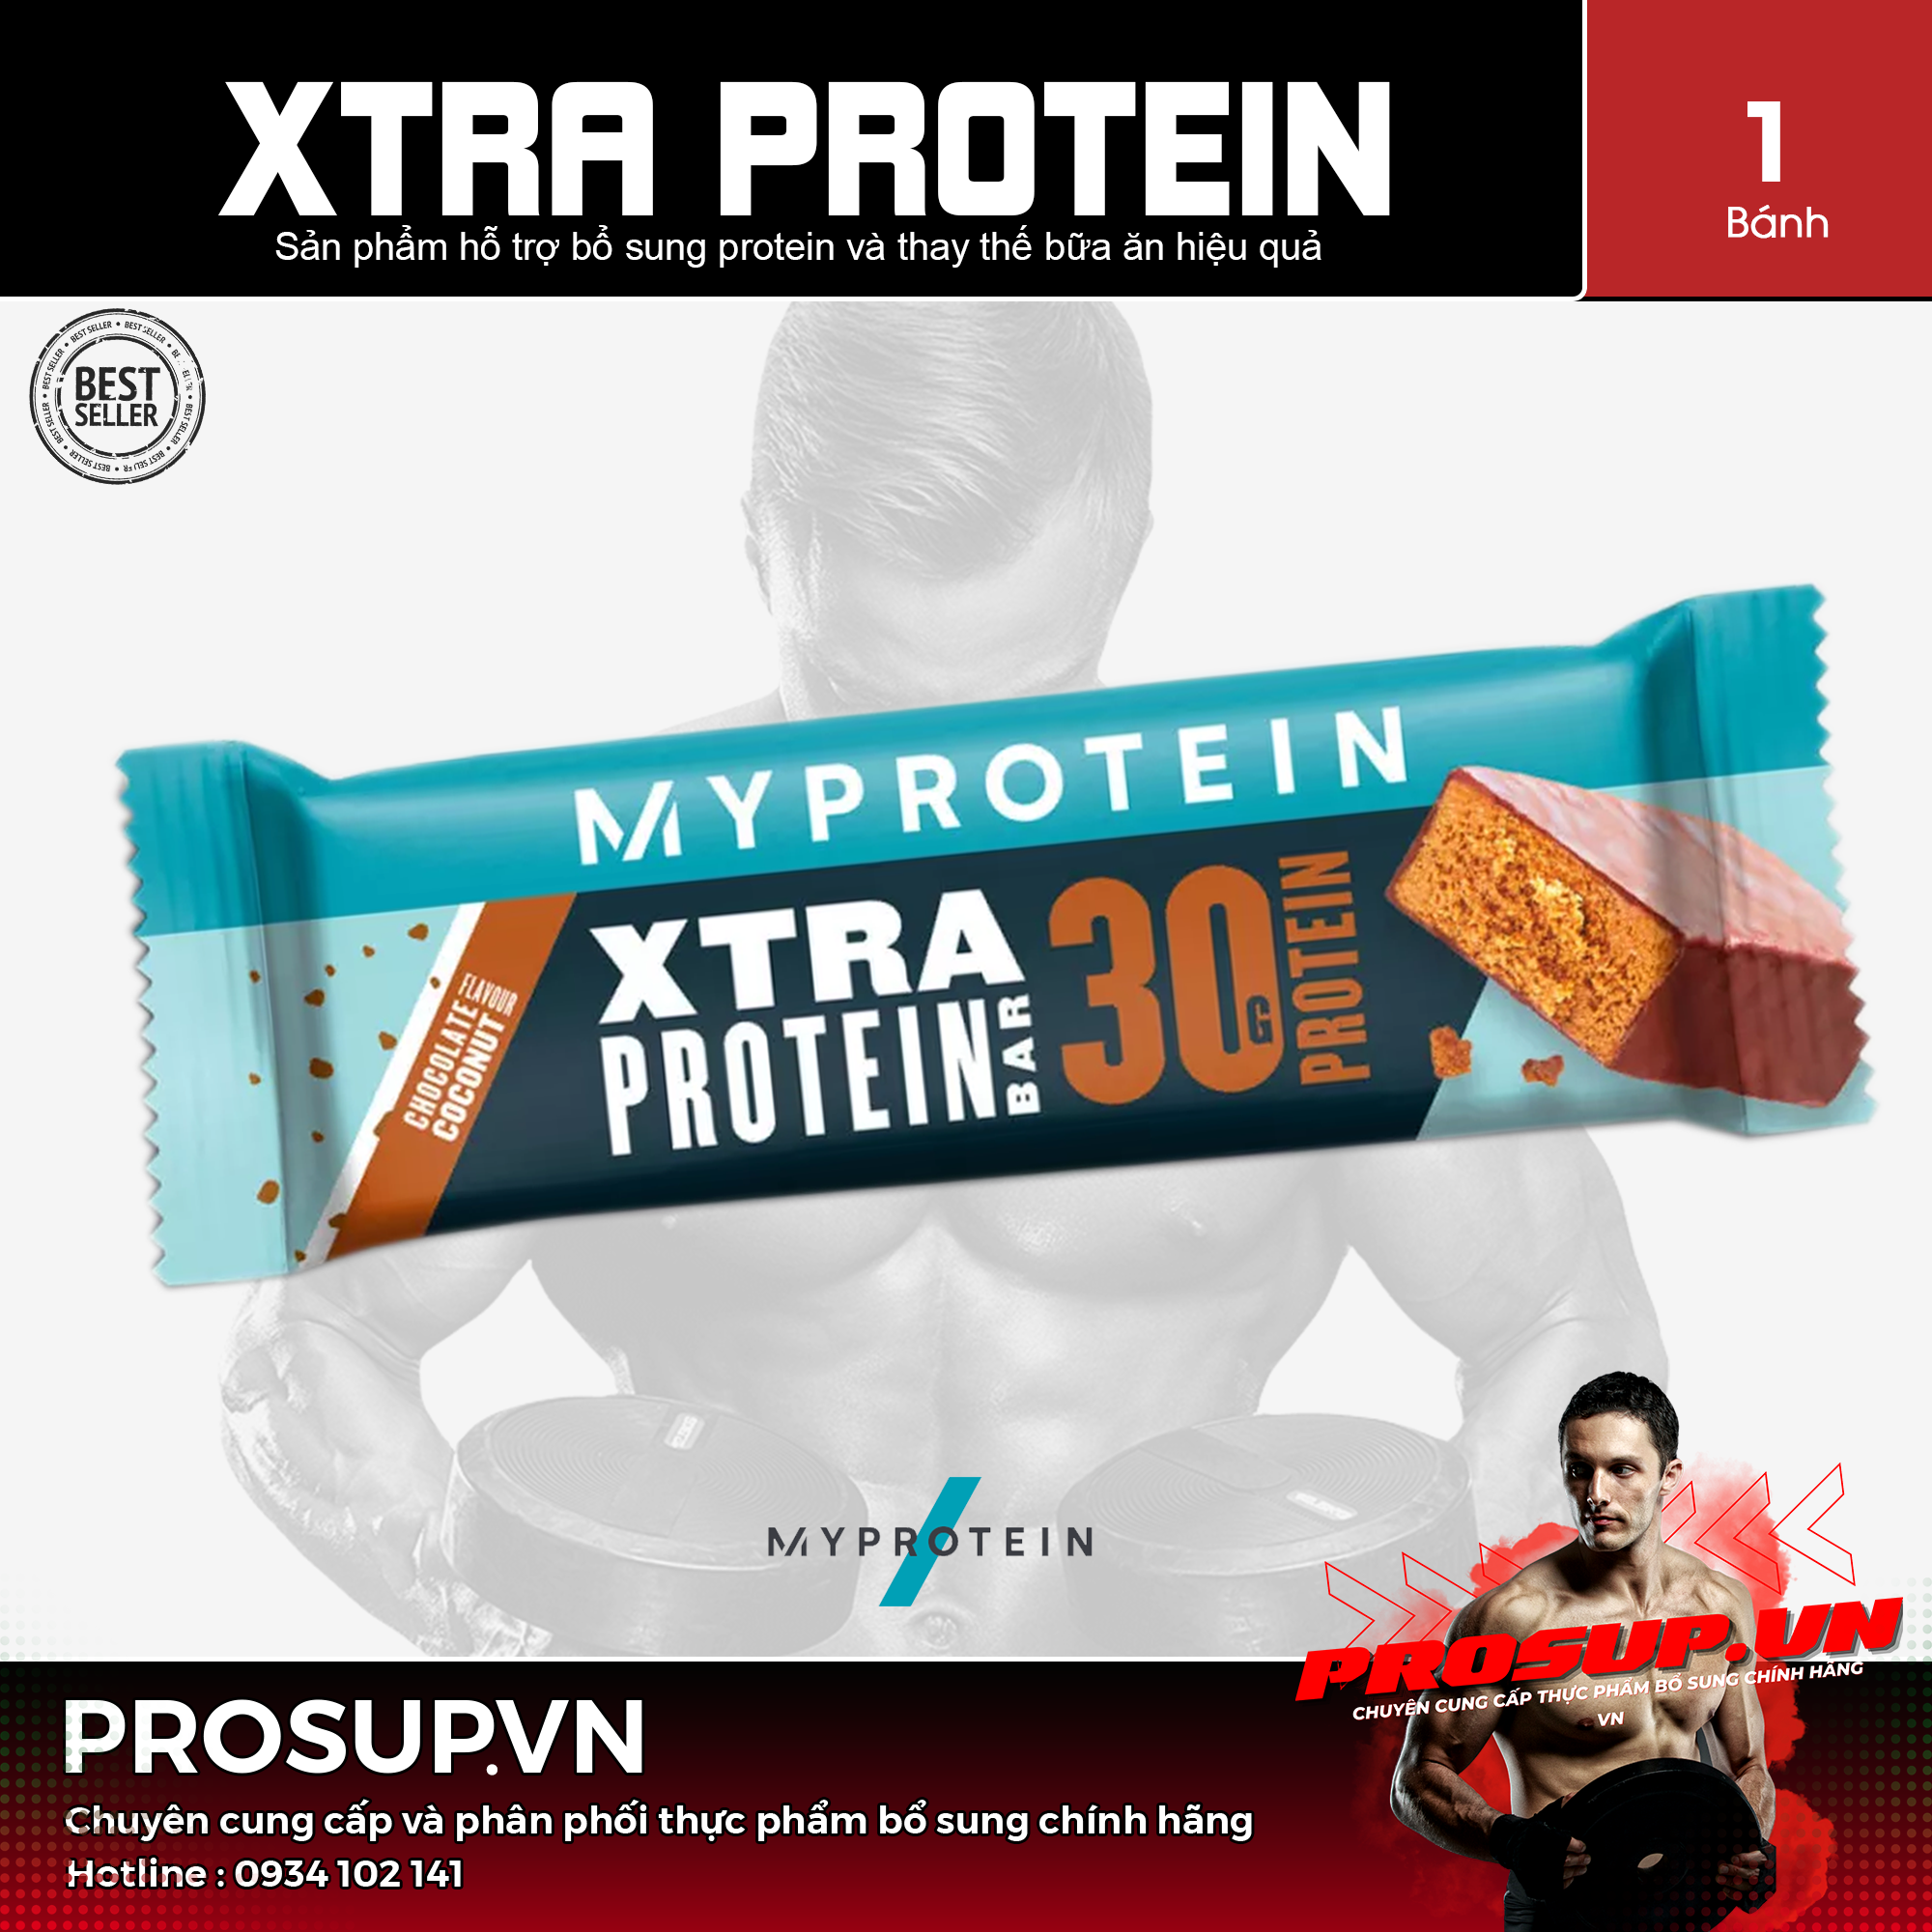 Xtra Protein – (80g/1 thanh) My Protein – Bar protein bữa ăn thay thế cung cấp 30g protein và năng lượng hiệu quả